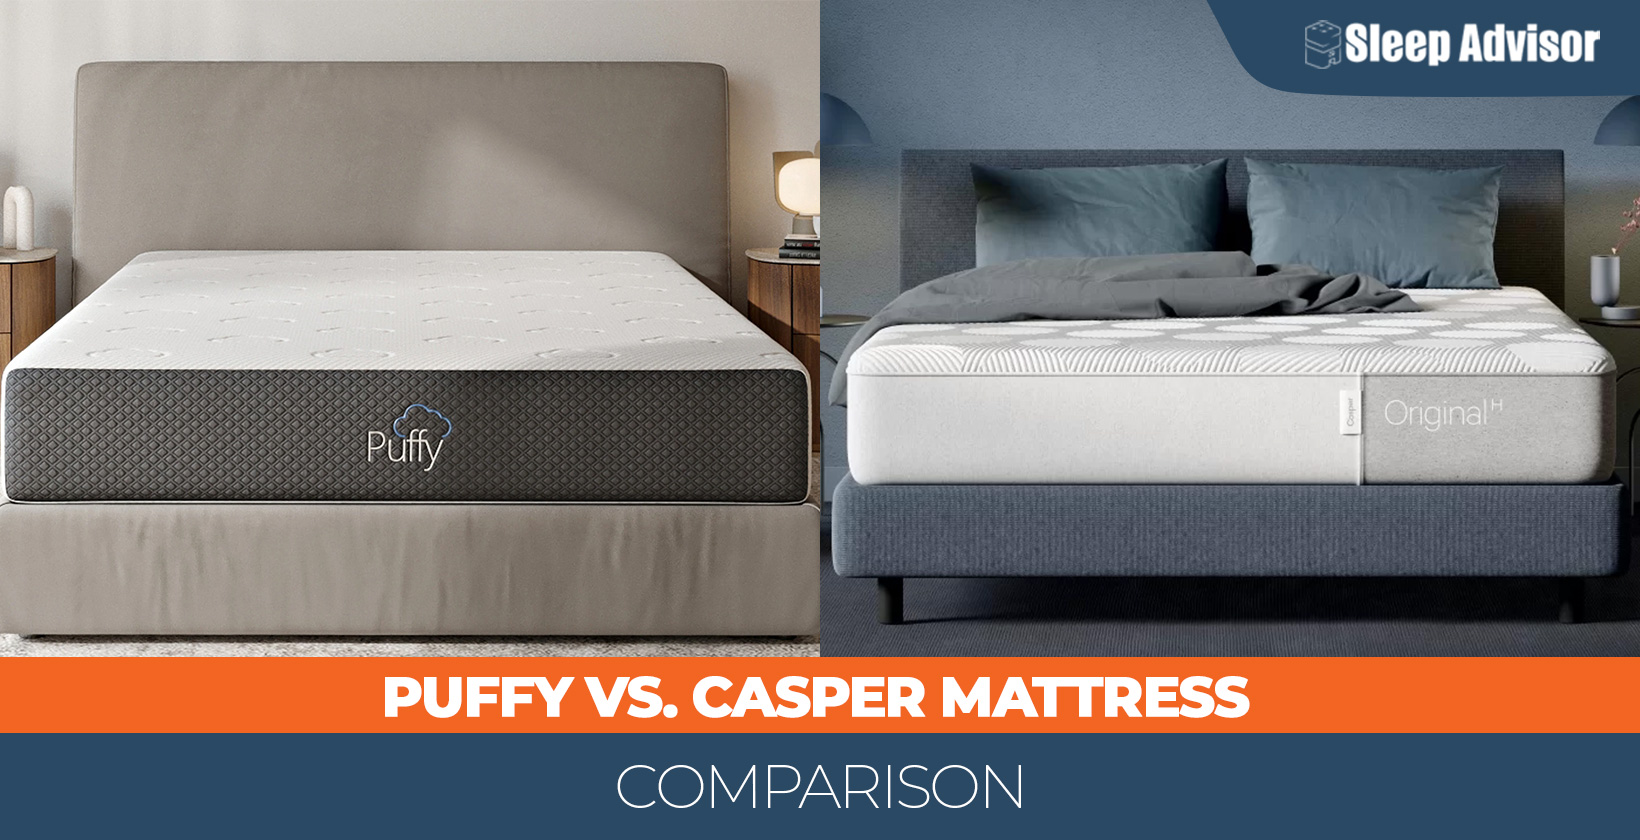 Puffy versus Casper mattress comparison